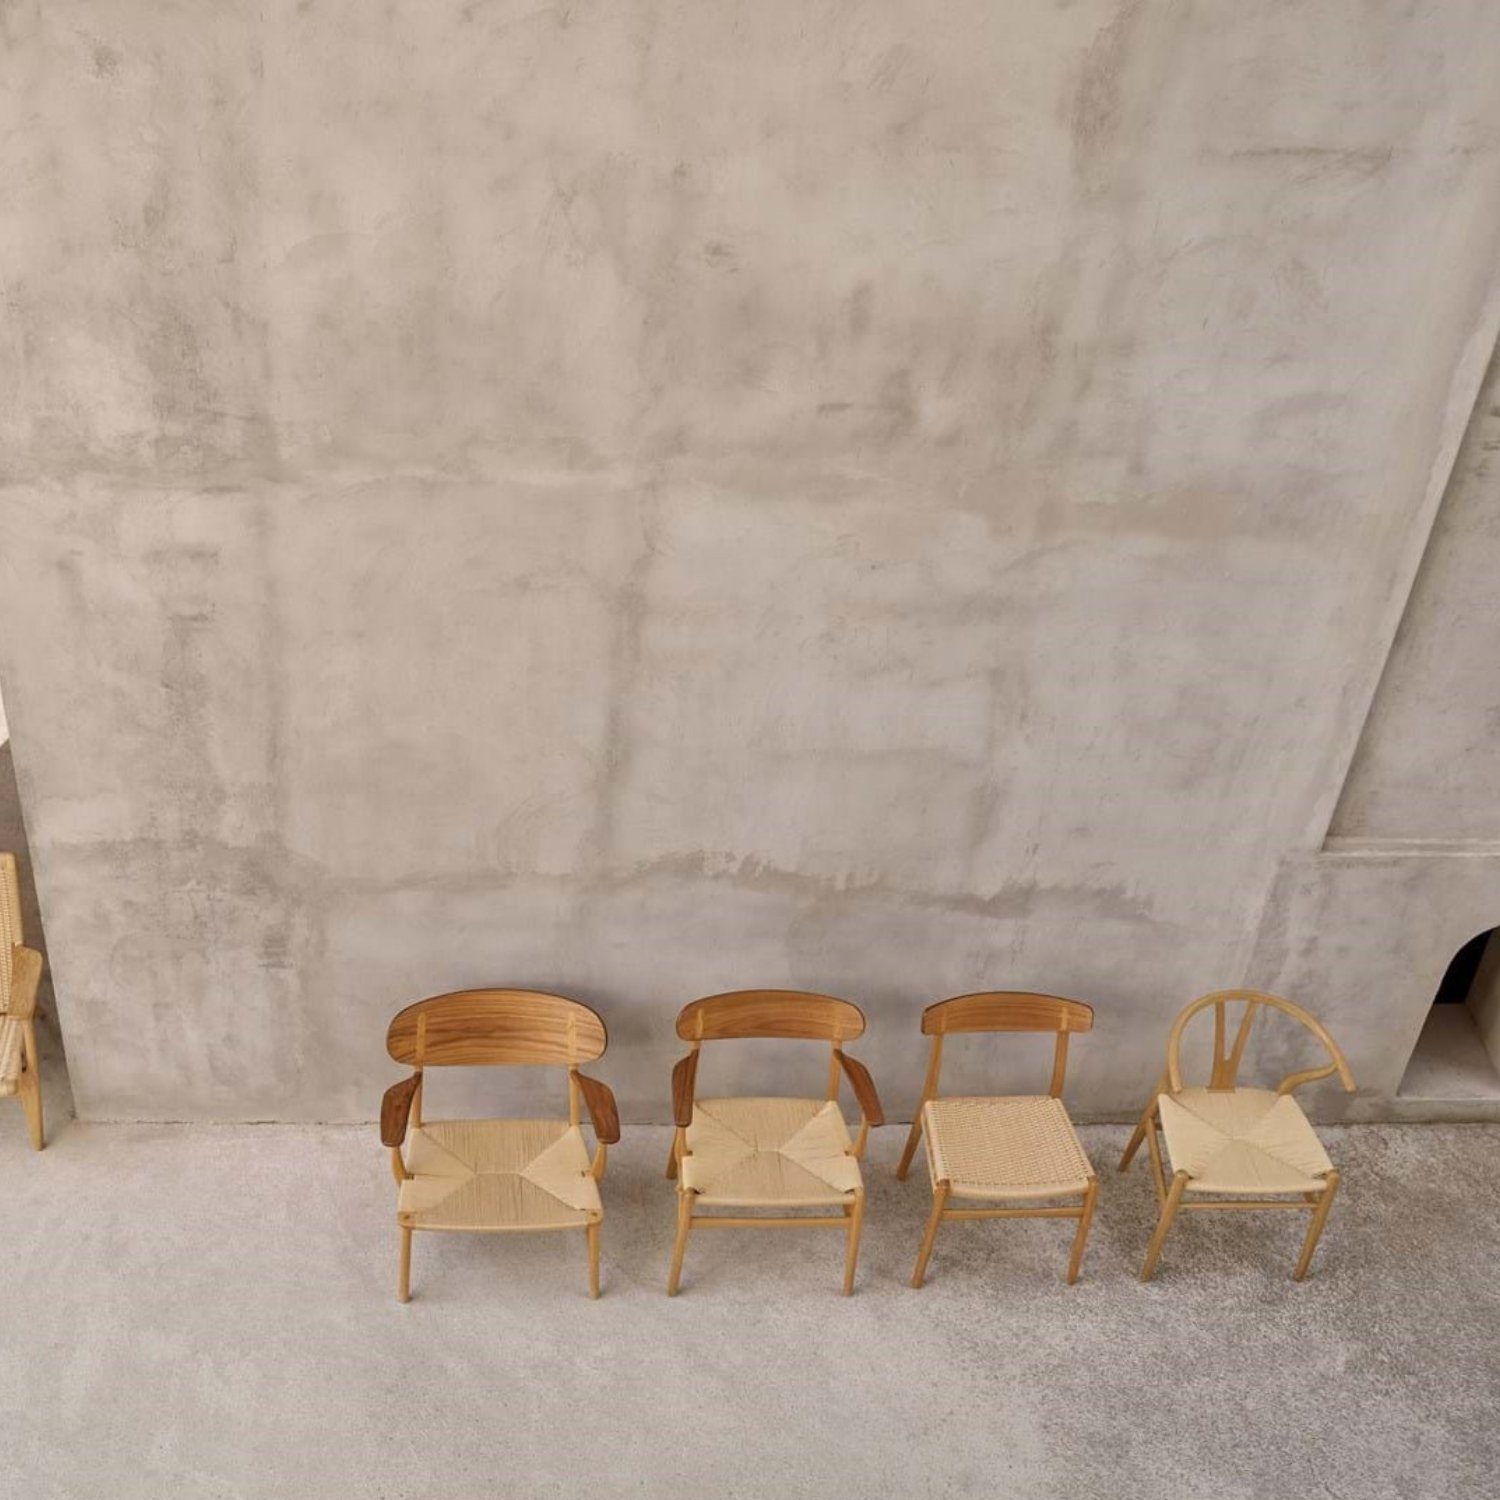 Chair Carl Geflecht Carl Hansen Natur Buche geölt Y-Chair / Stuhl Esszimmerstuhl Wishbone Hansen